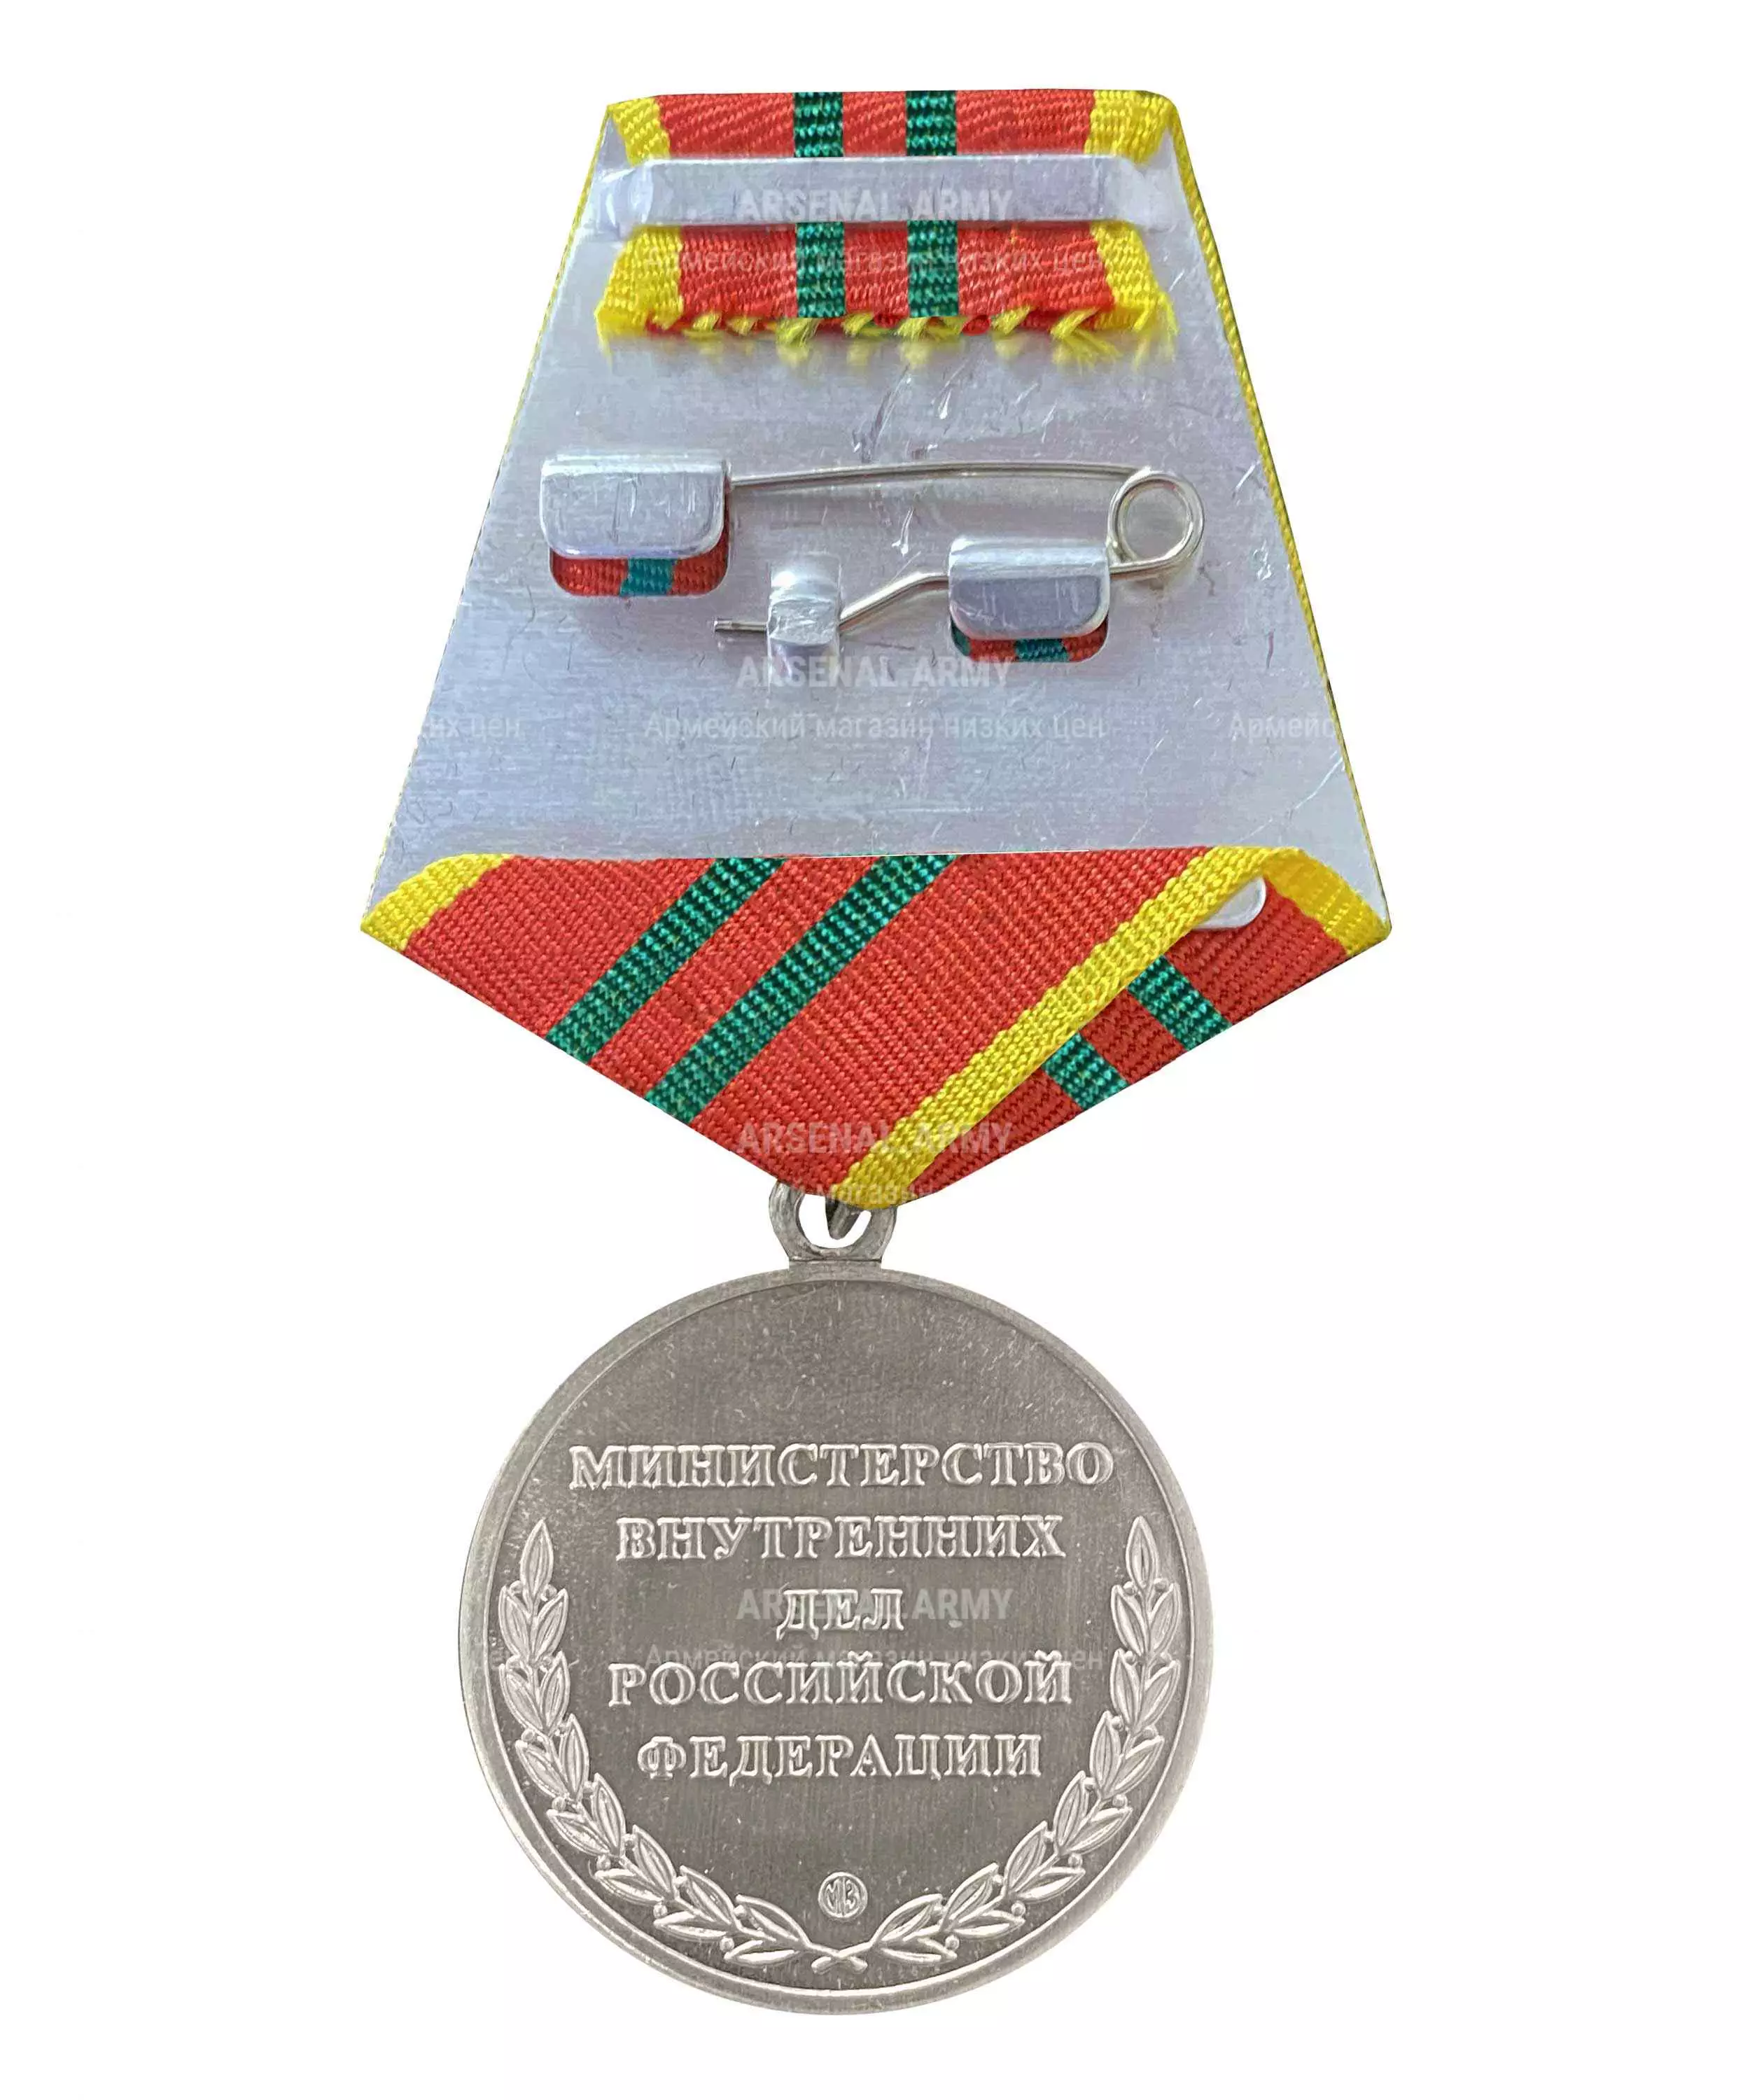 Медаль МВД "За отличие в службе" 2 степени — 2